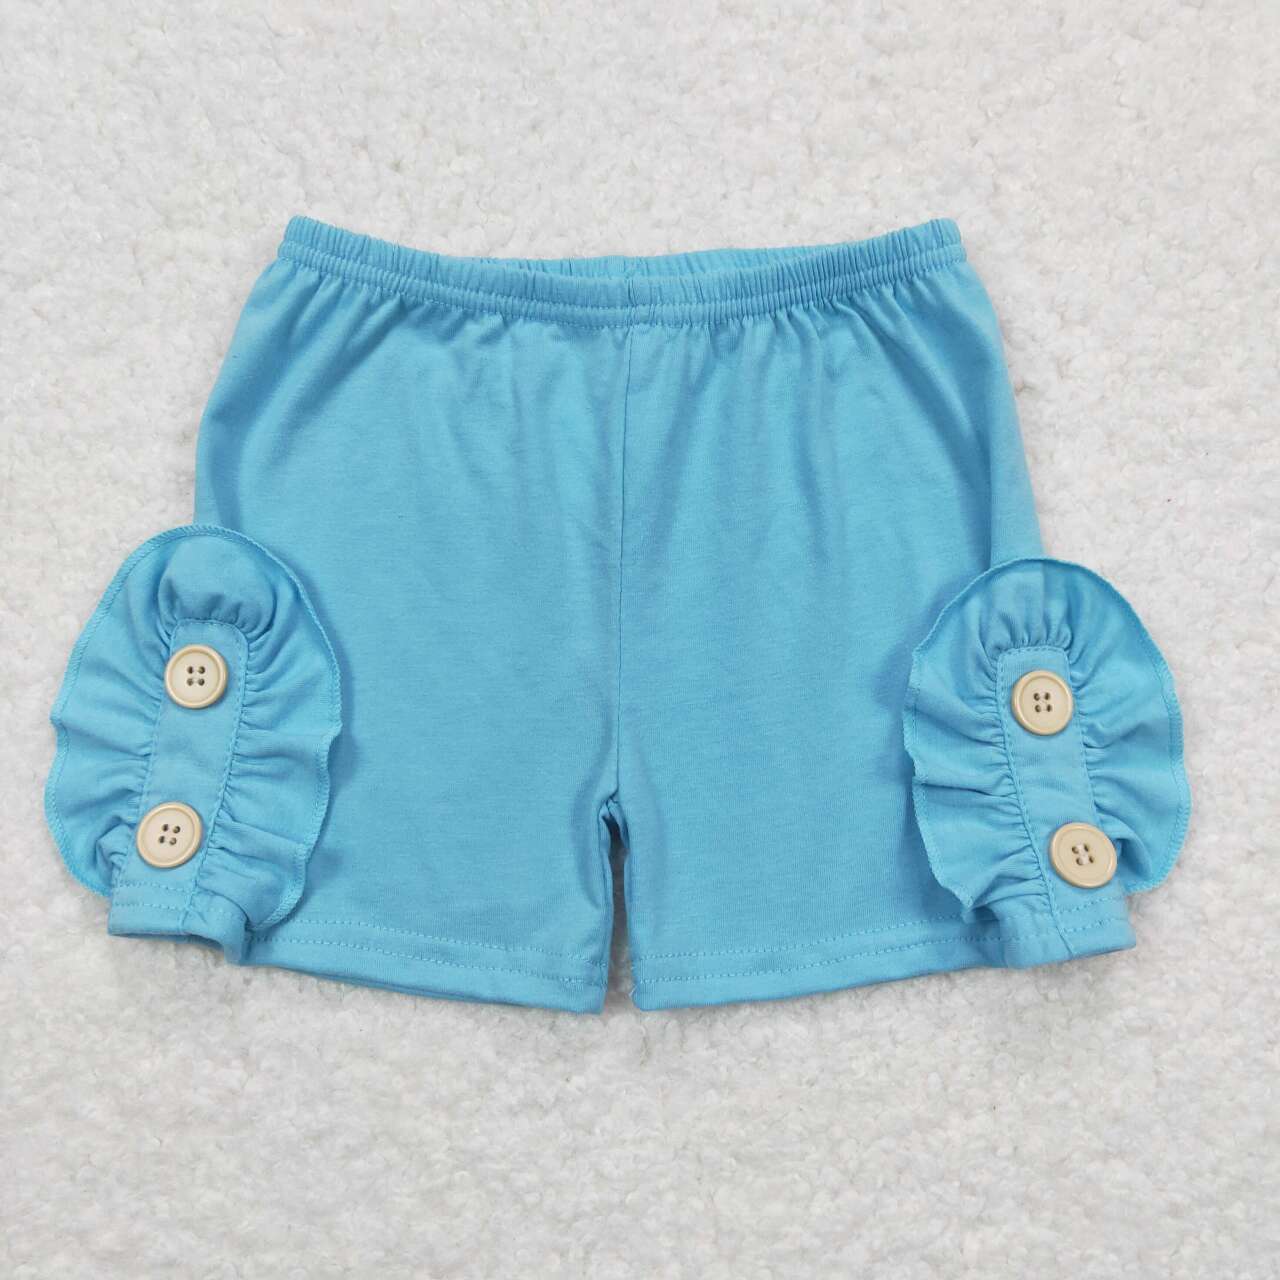 GSSO1170 Cartoon Dog Top Blue Buttons Shorts Girls Summer Clothes Set